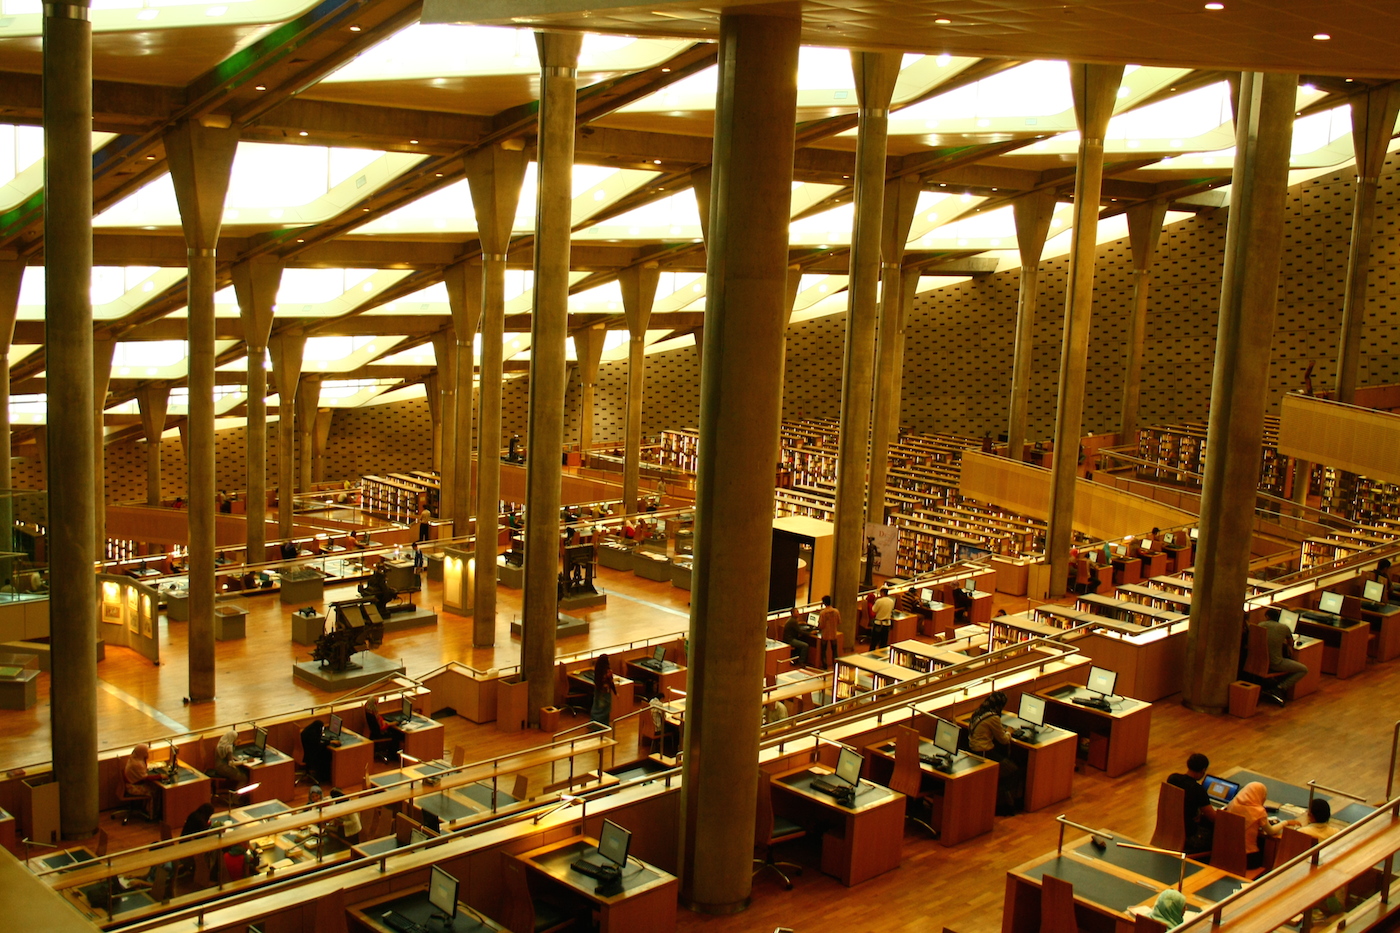 Mısır'ın başkenti Kahire'de hizmet veren bugünkü İskenderiye Kütüphanesi'nden bir kesit.